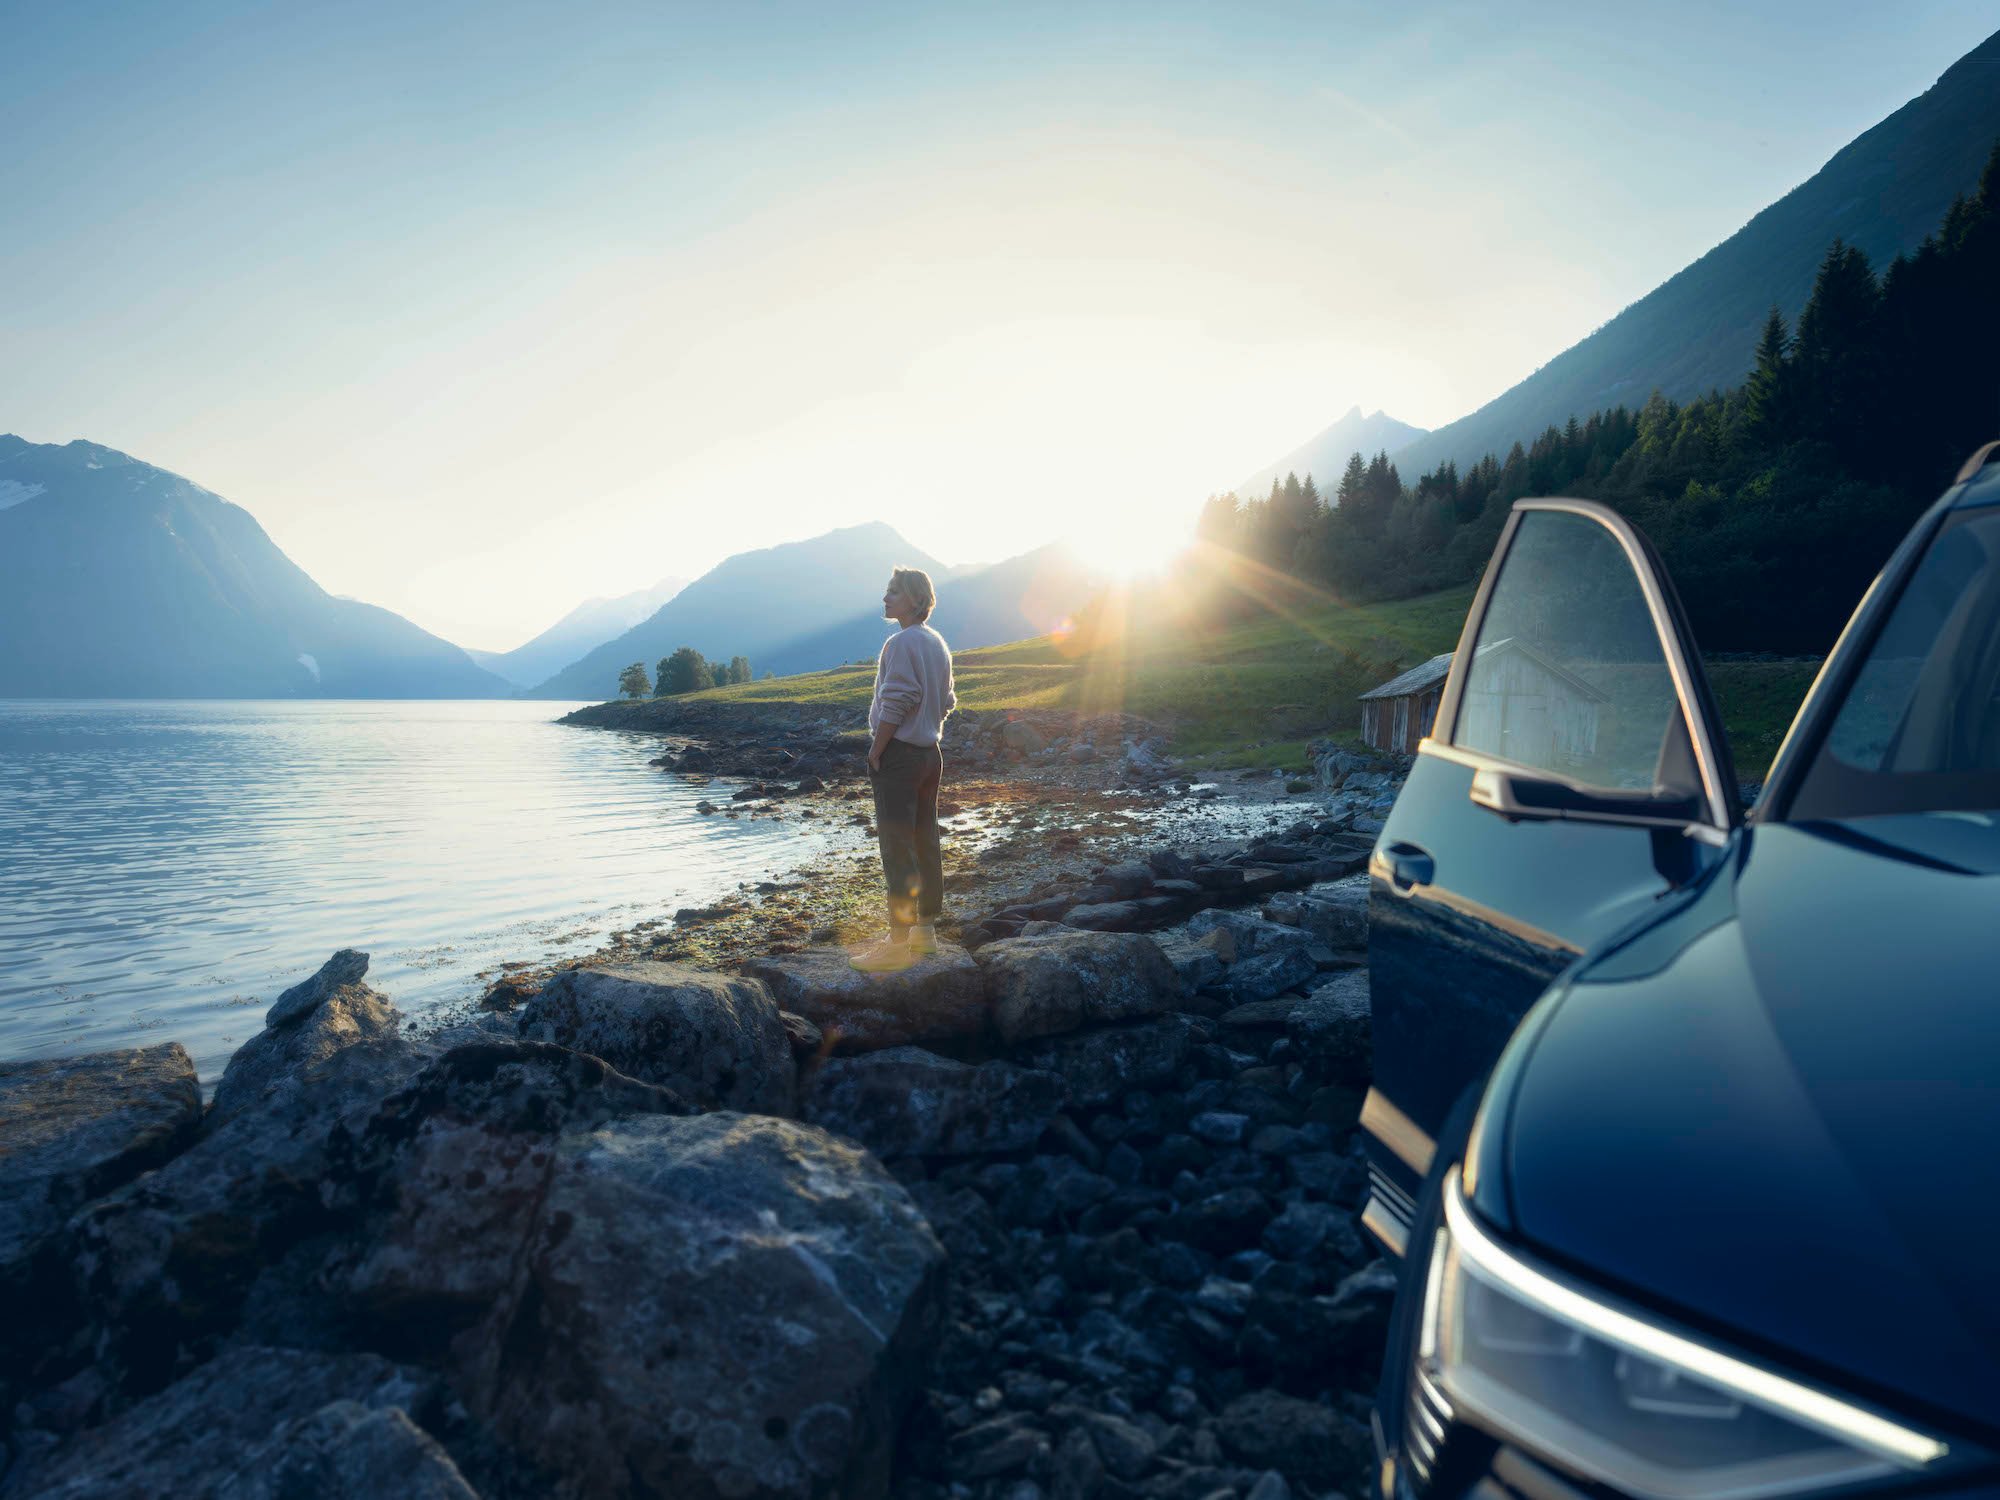 Audi terenec na obali jezera med sončnim vzhodom, v ozadju ženska, ki gleda na jezero